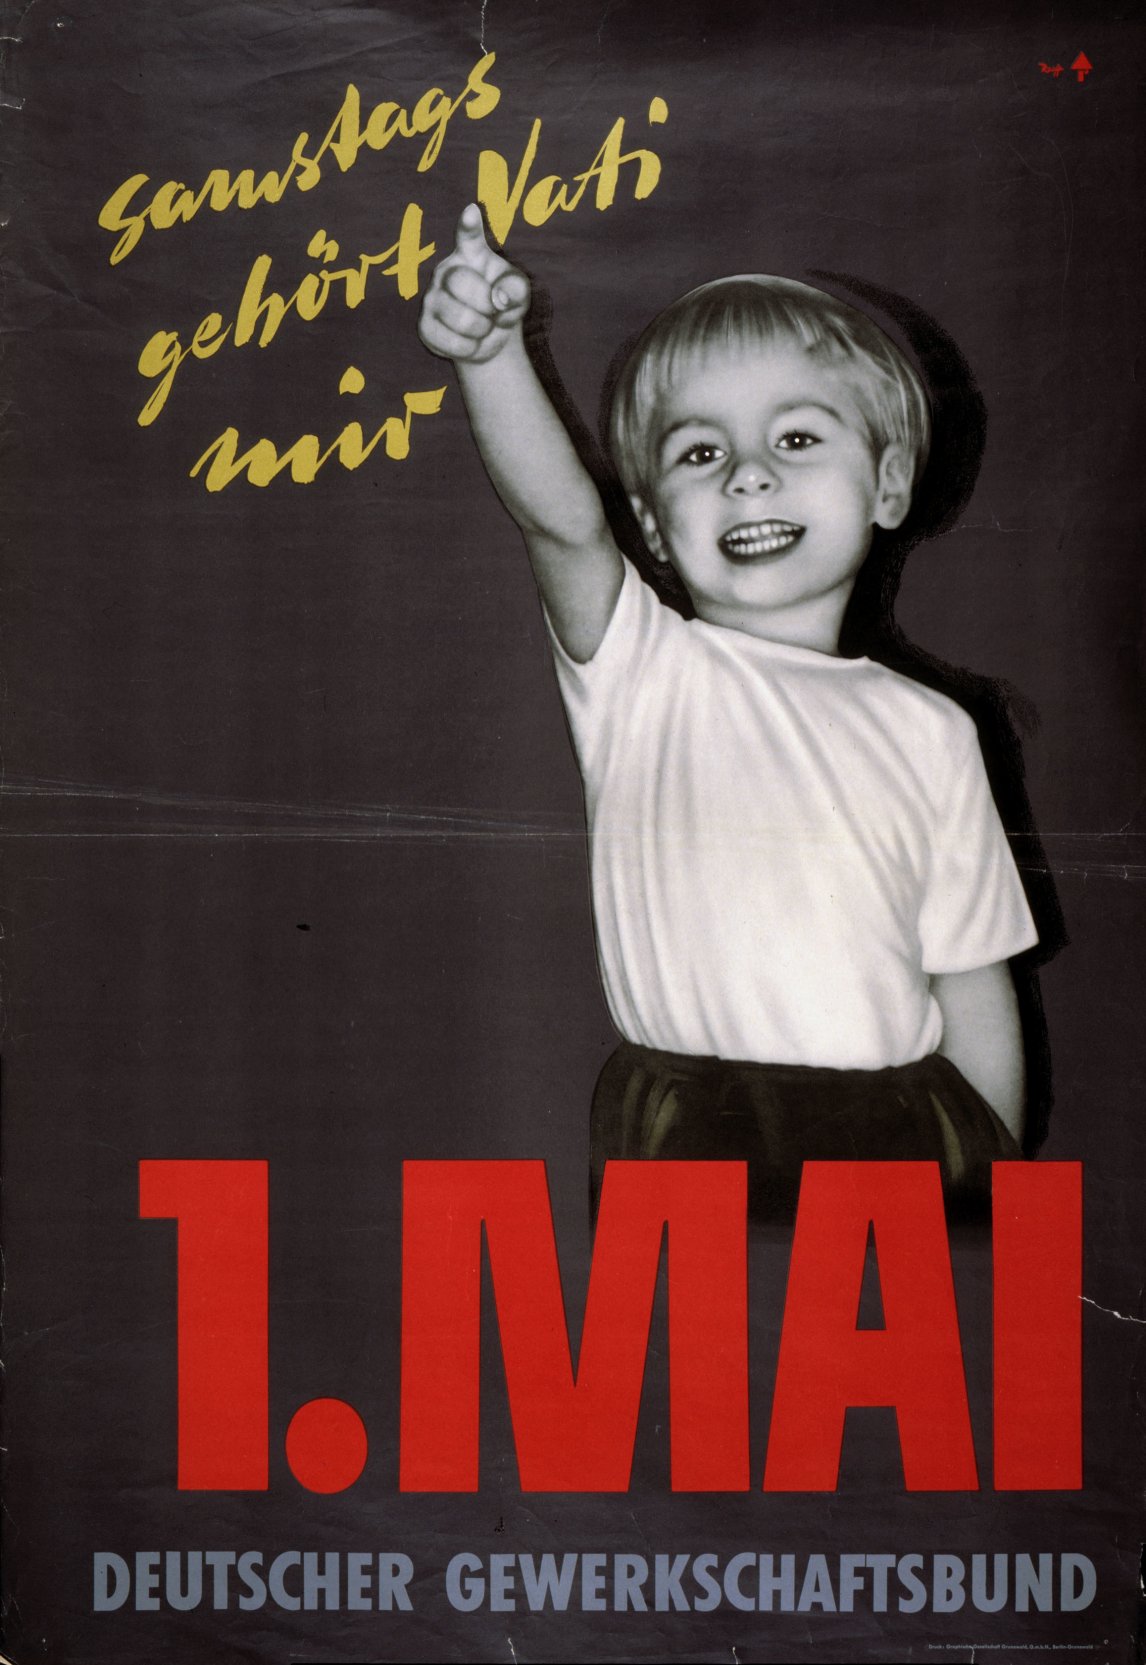 Mit diesem Plakat warb der Deutsche Gewerkschaftsbund in den Fünzigerjahren für eine Fünftagewoche. Bis dahin war es etwa für Bergleute und Metallarbeiter normal, sechs Tage die Woche arbeiten zu müssen
